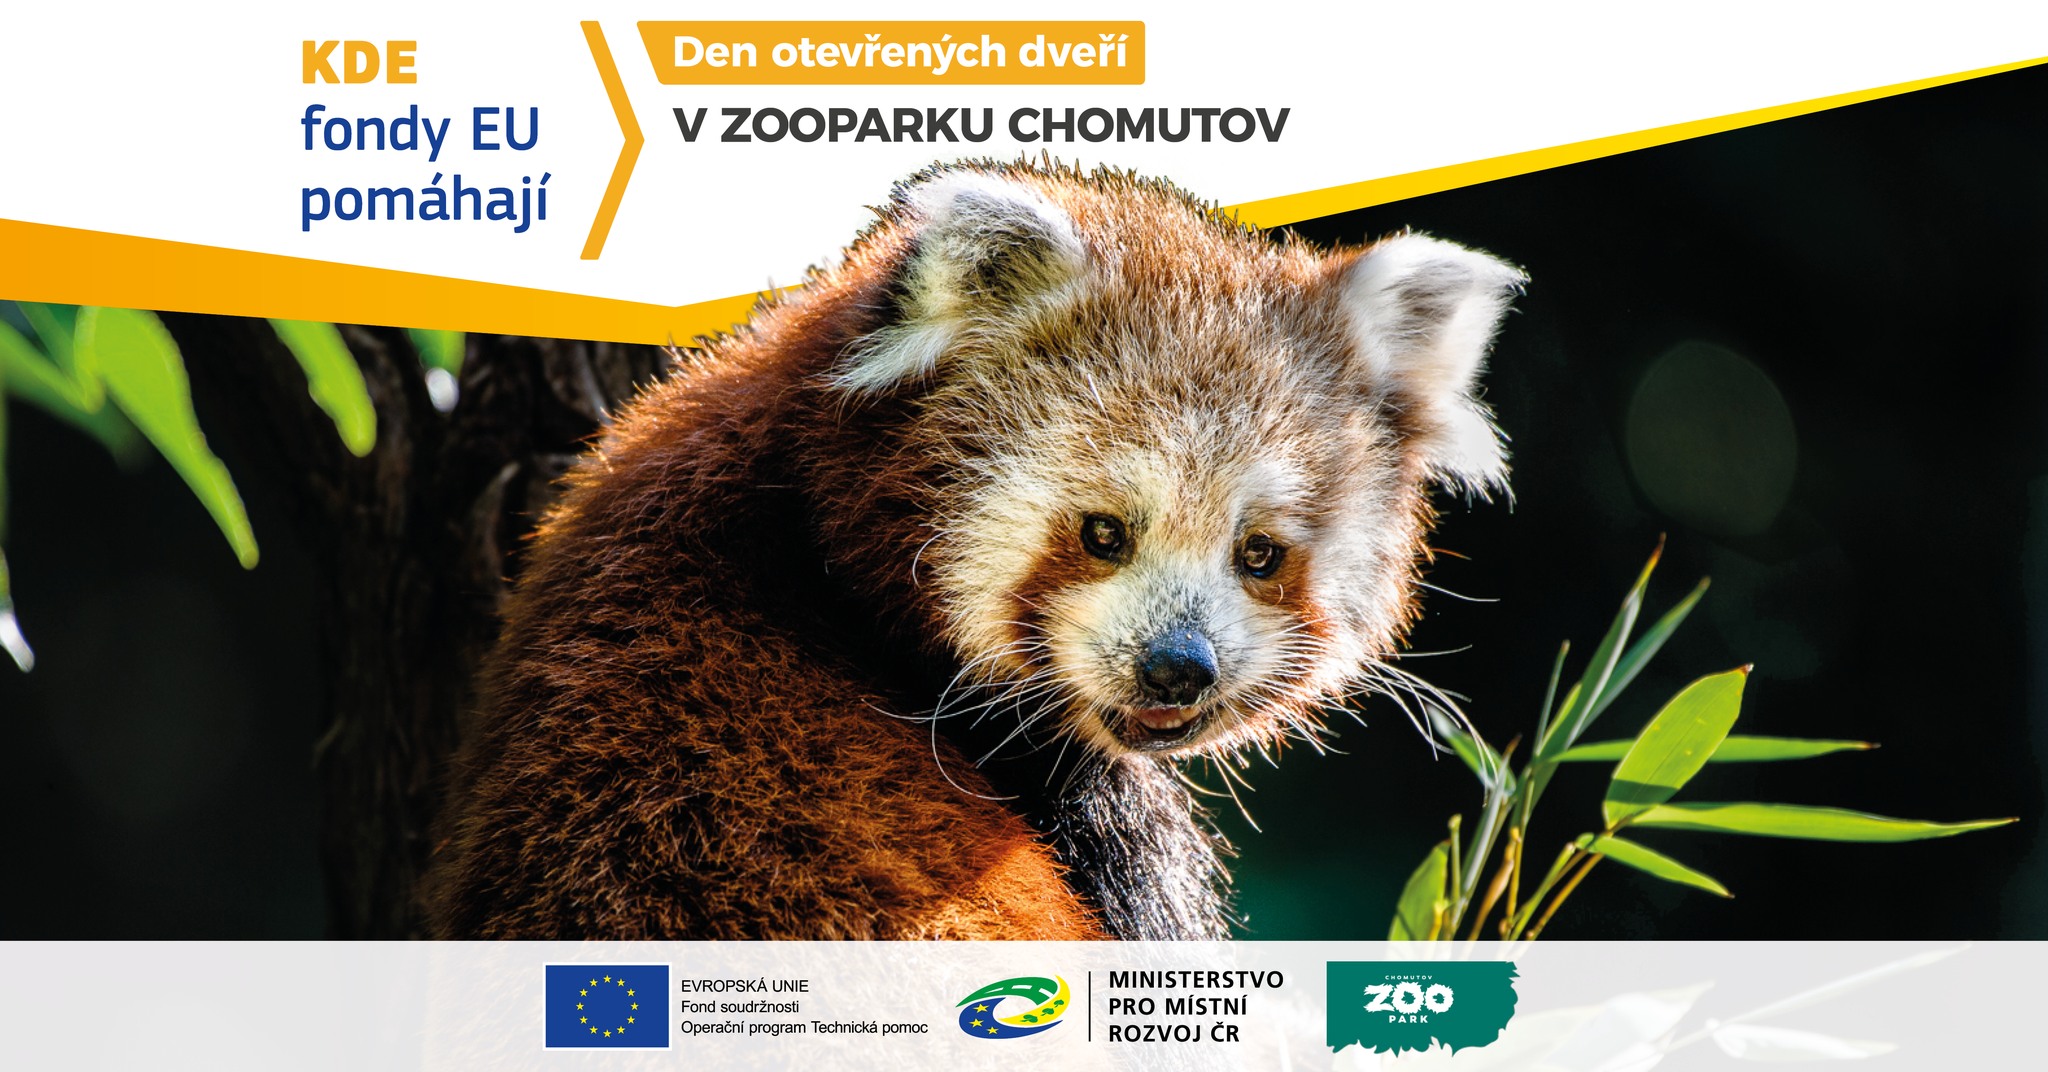 Den otevřených dveří - Zoopark Chomutov